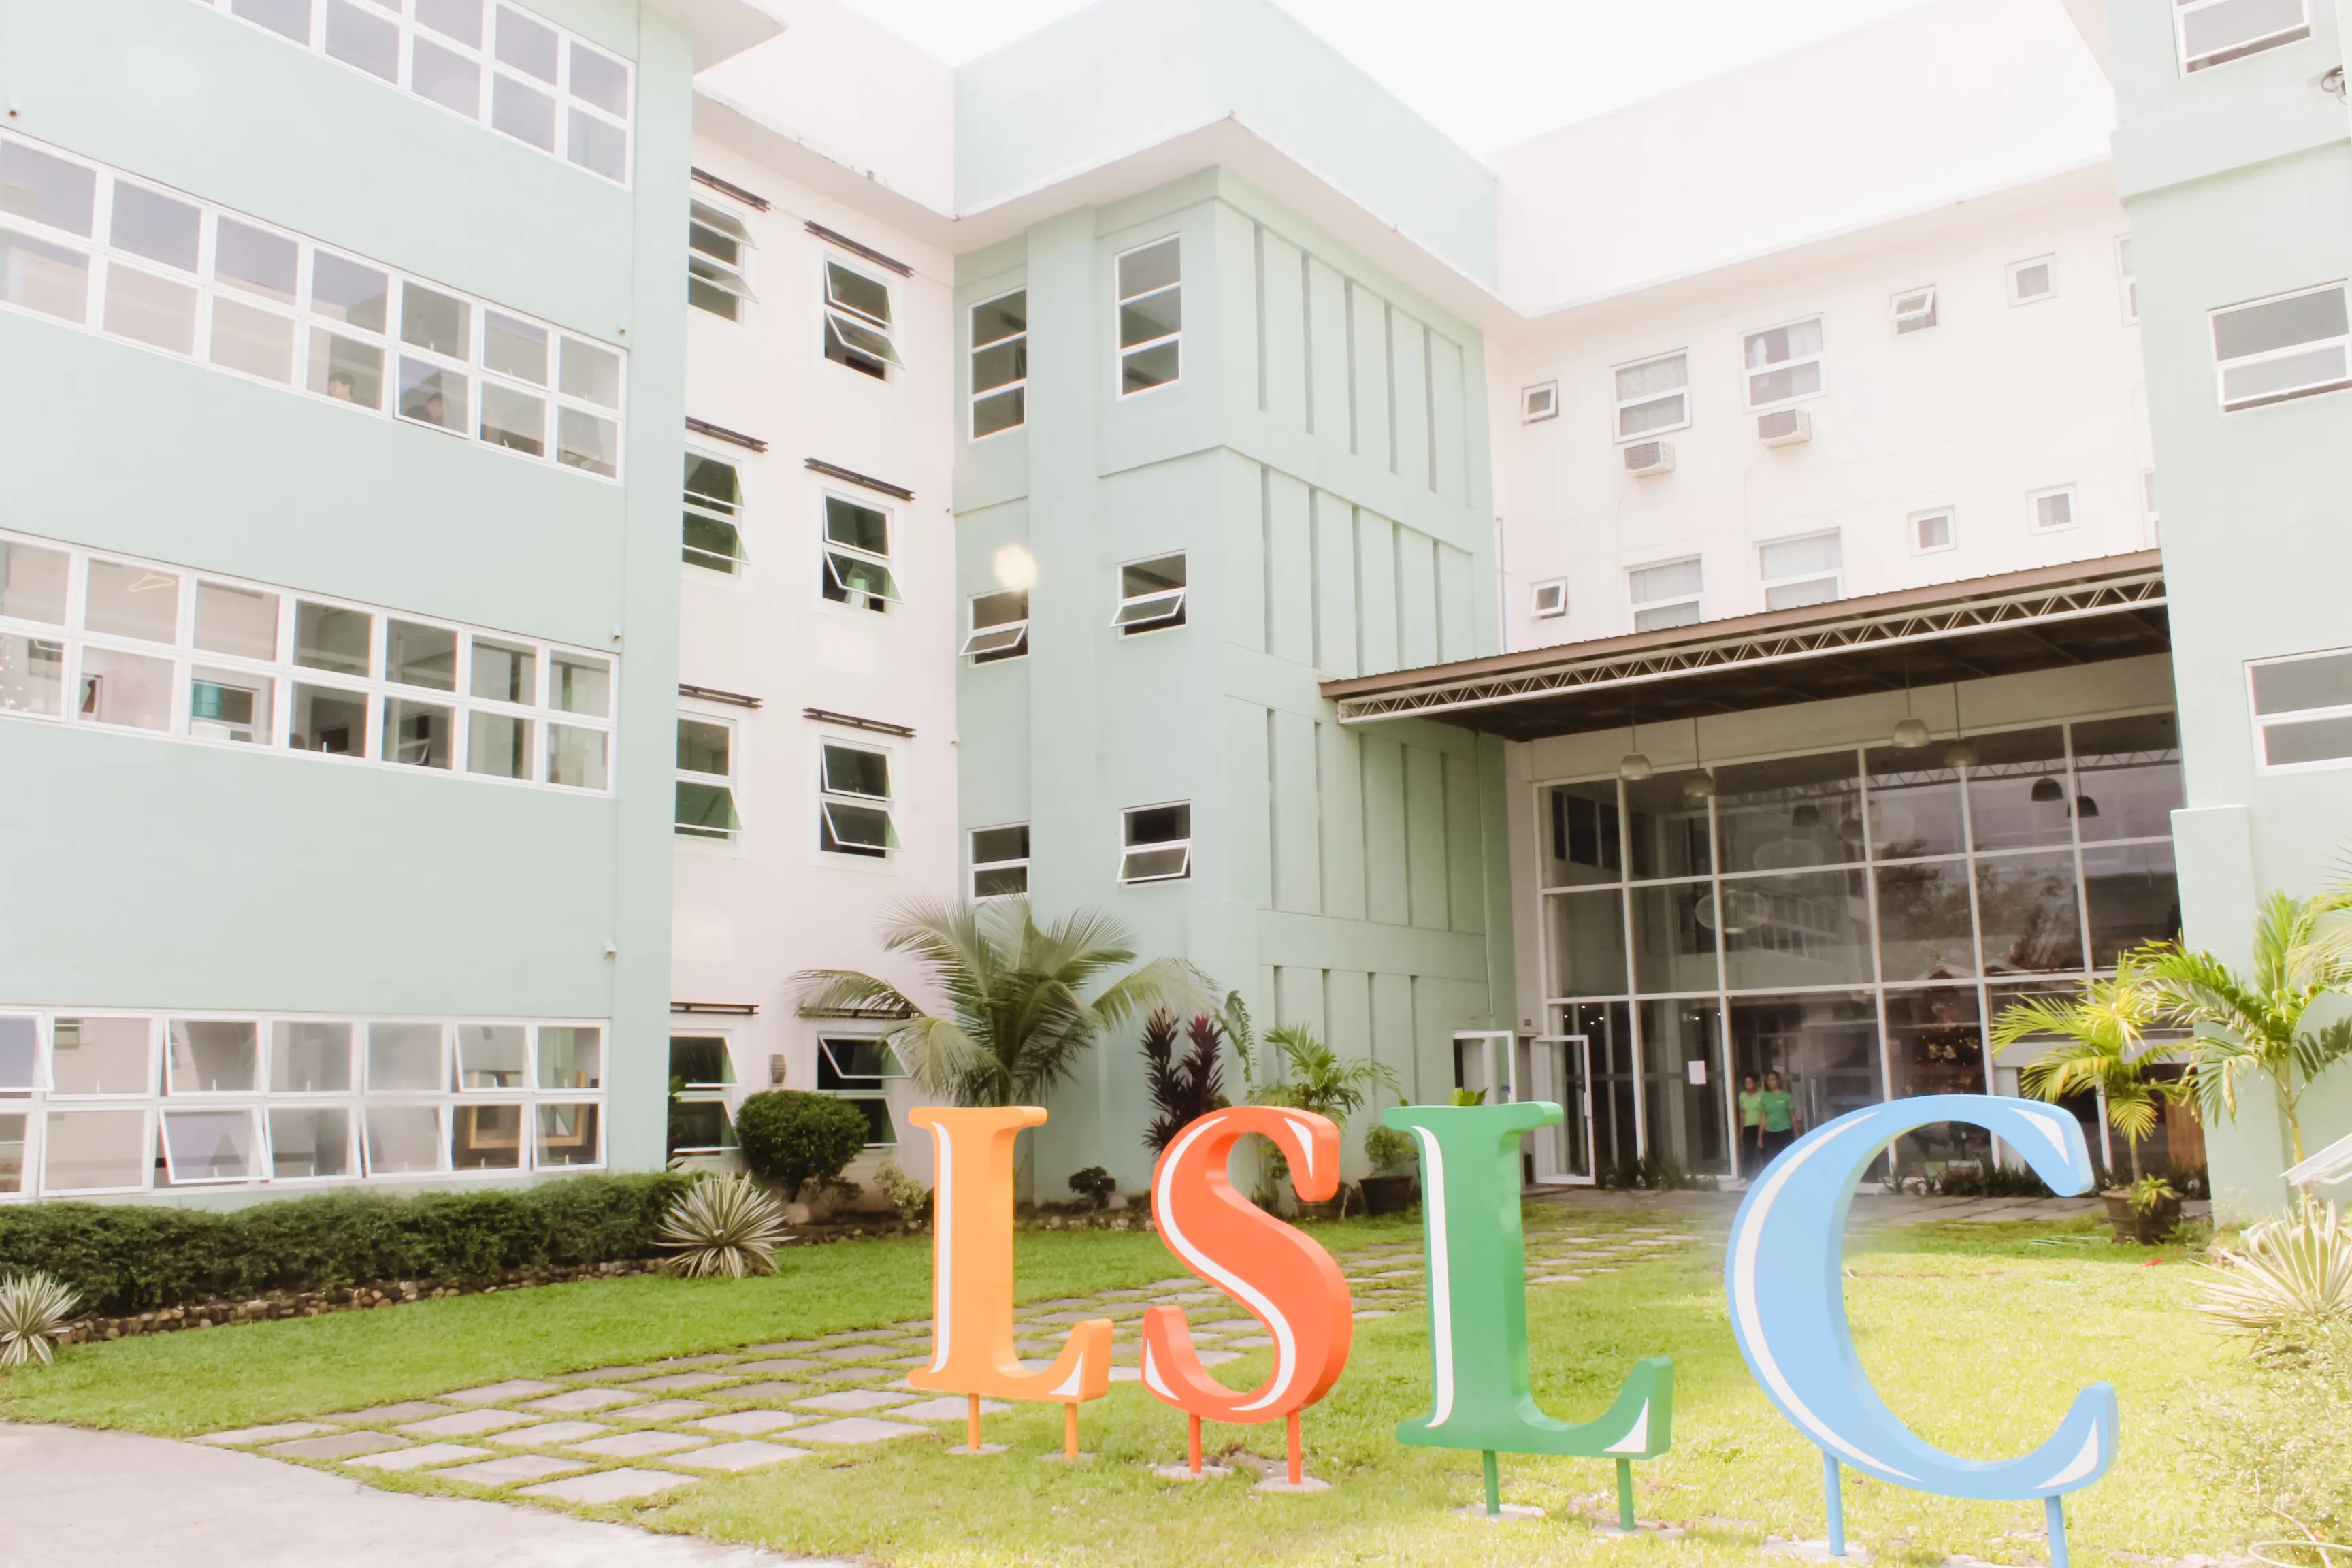 LSLC菲律賓語言學校